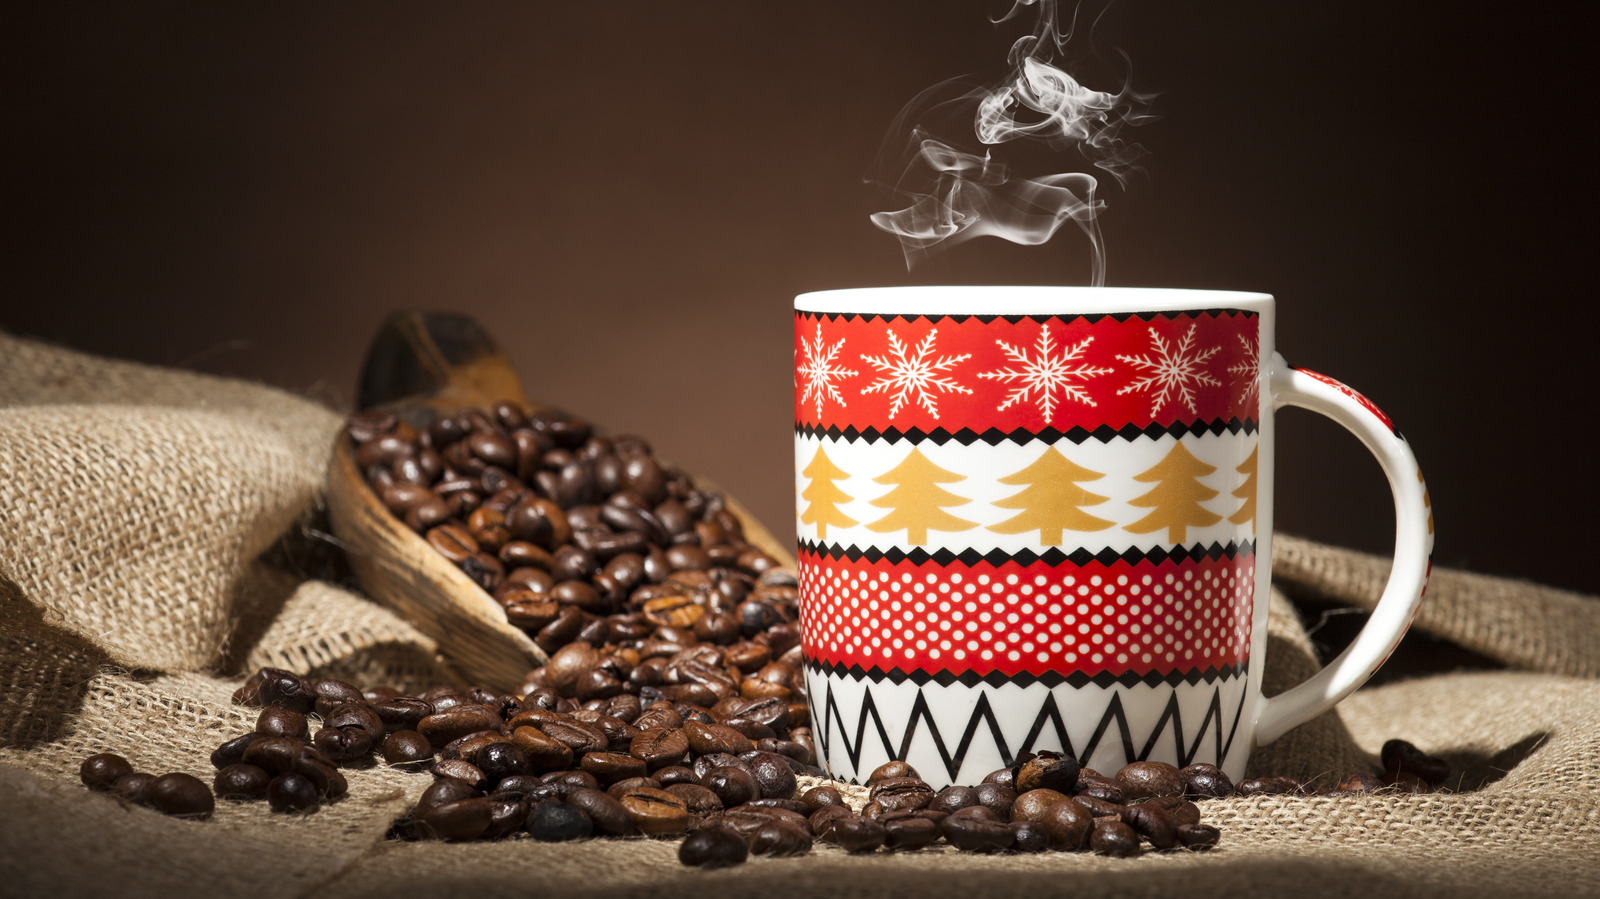 Black Barista Hug Mug — The Coffee House